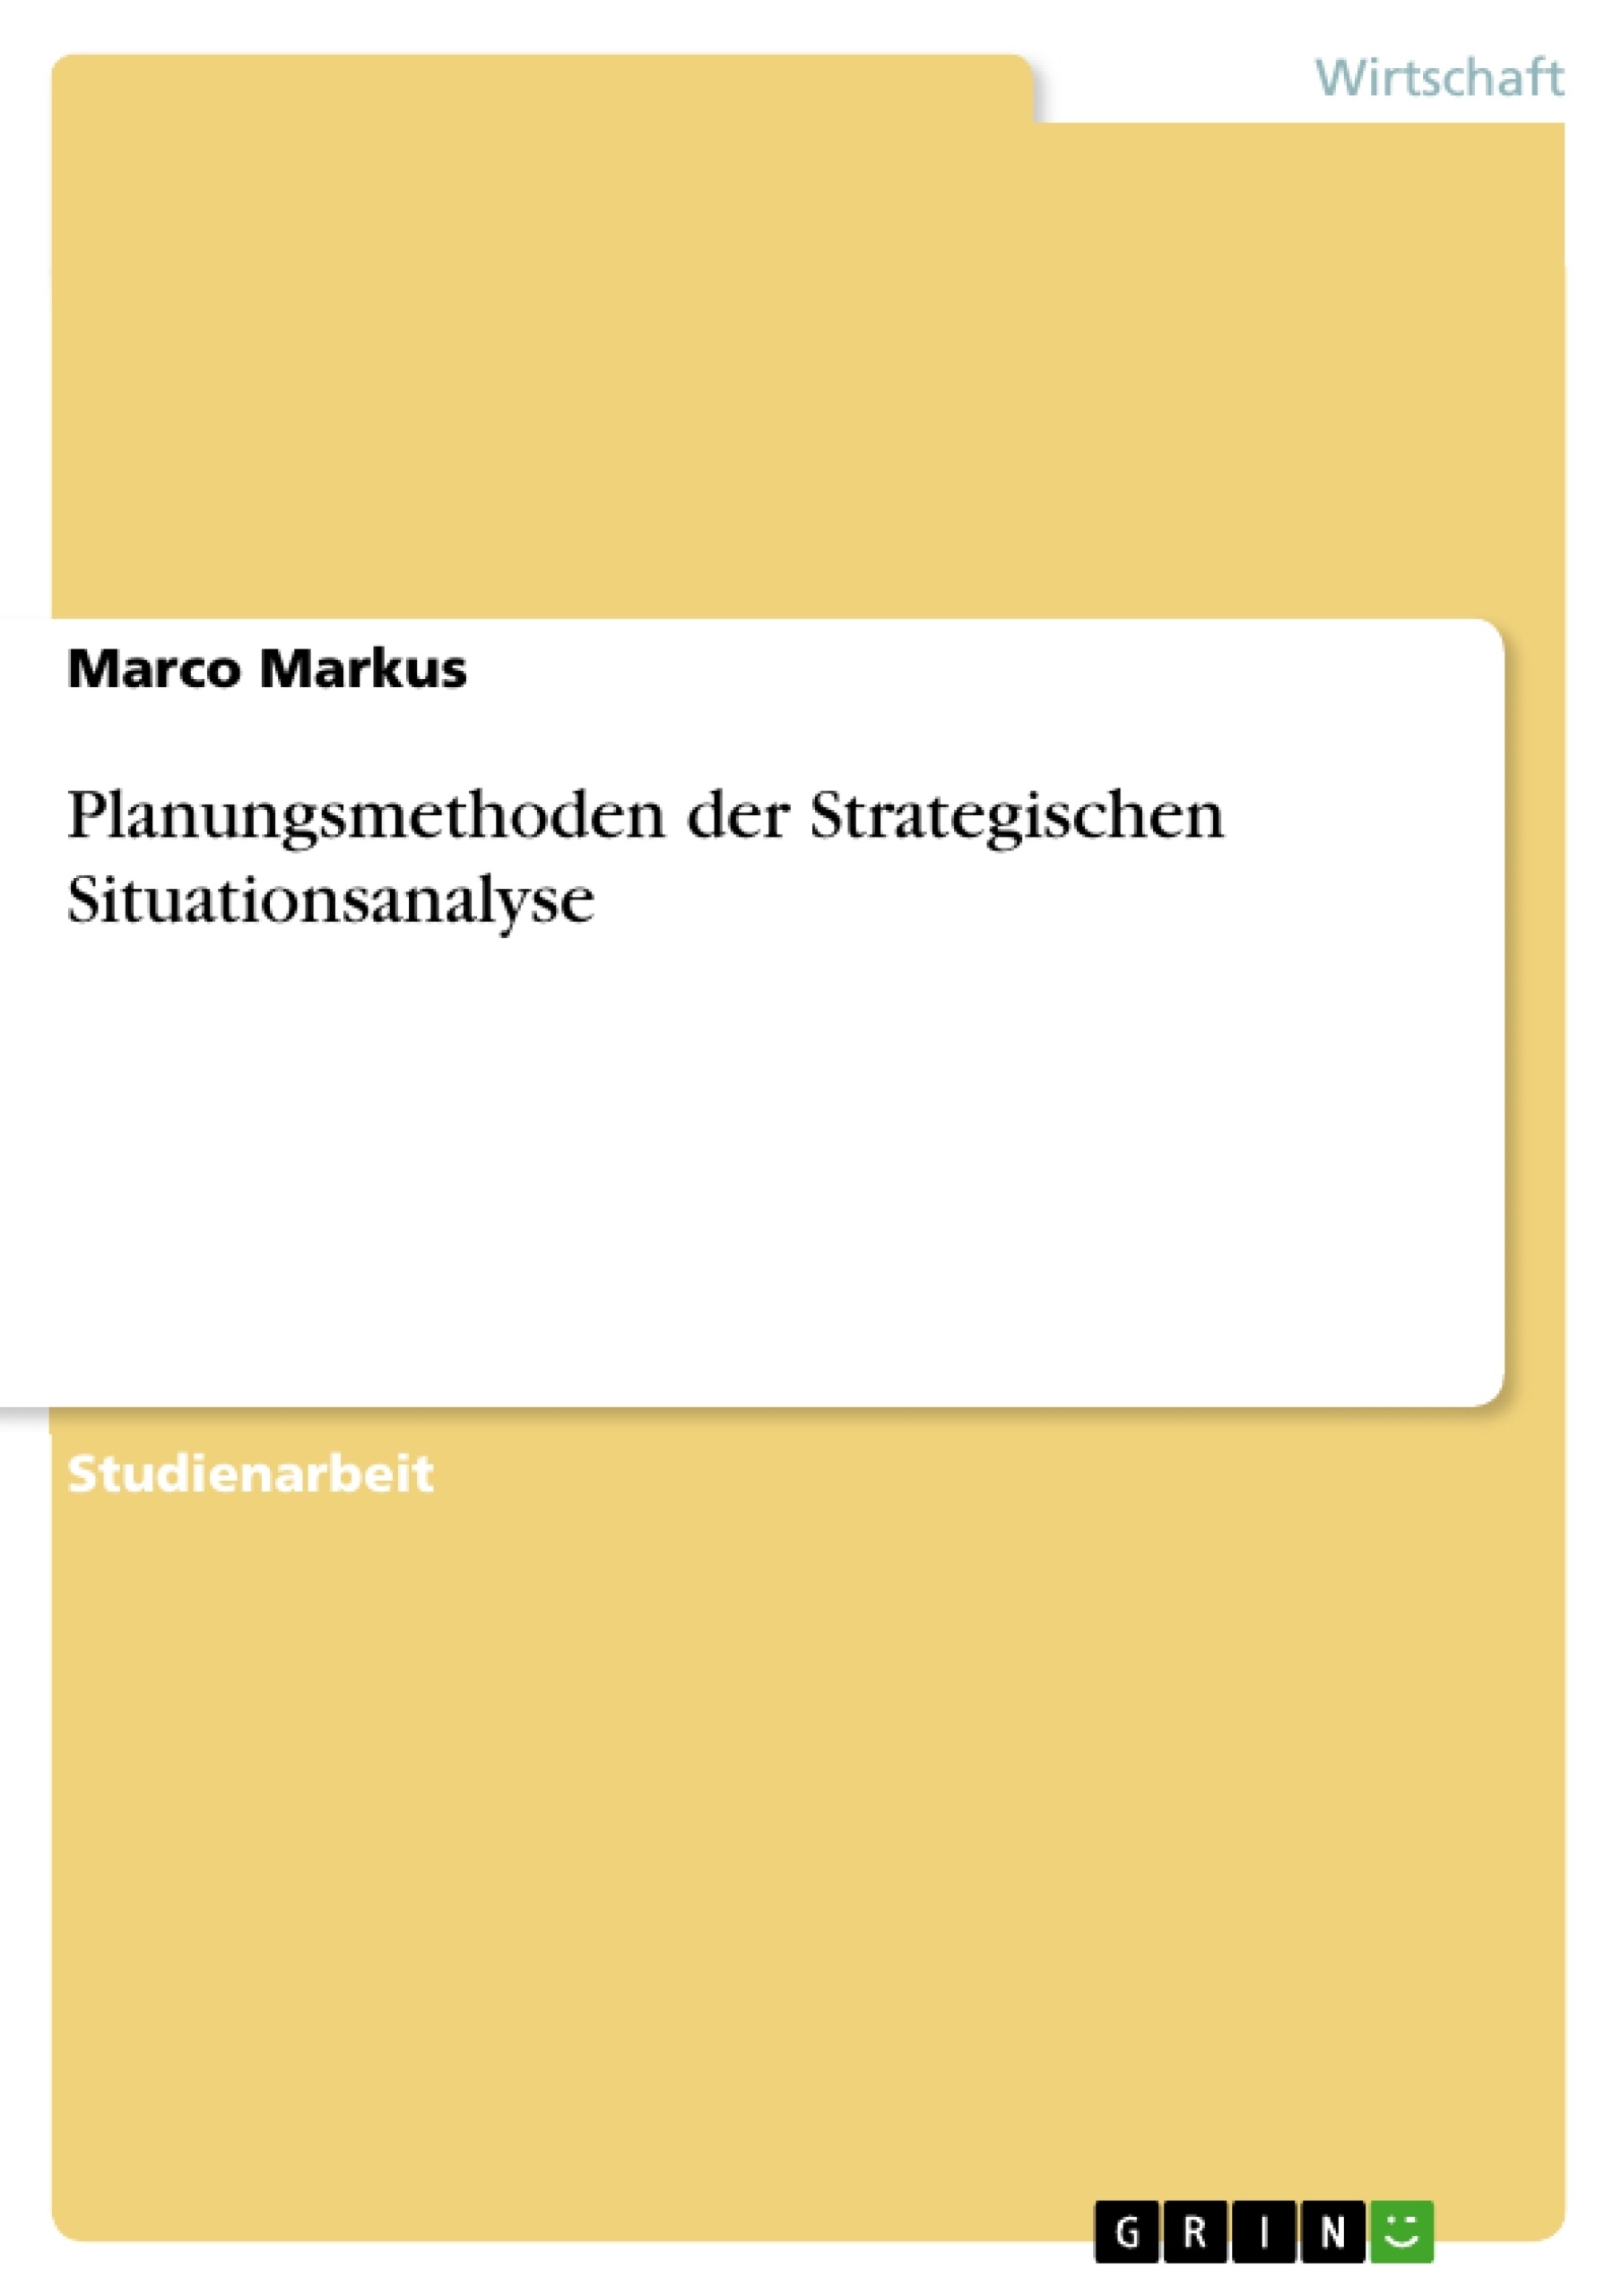 Title: Planungsmethoden der Strategischen Situationsanalyse